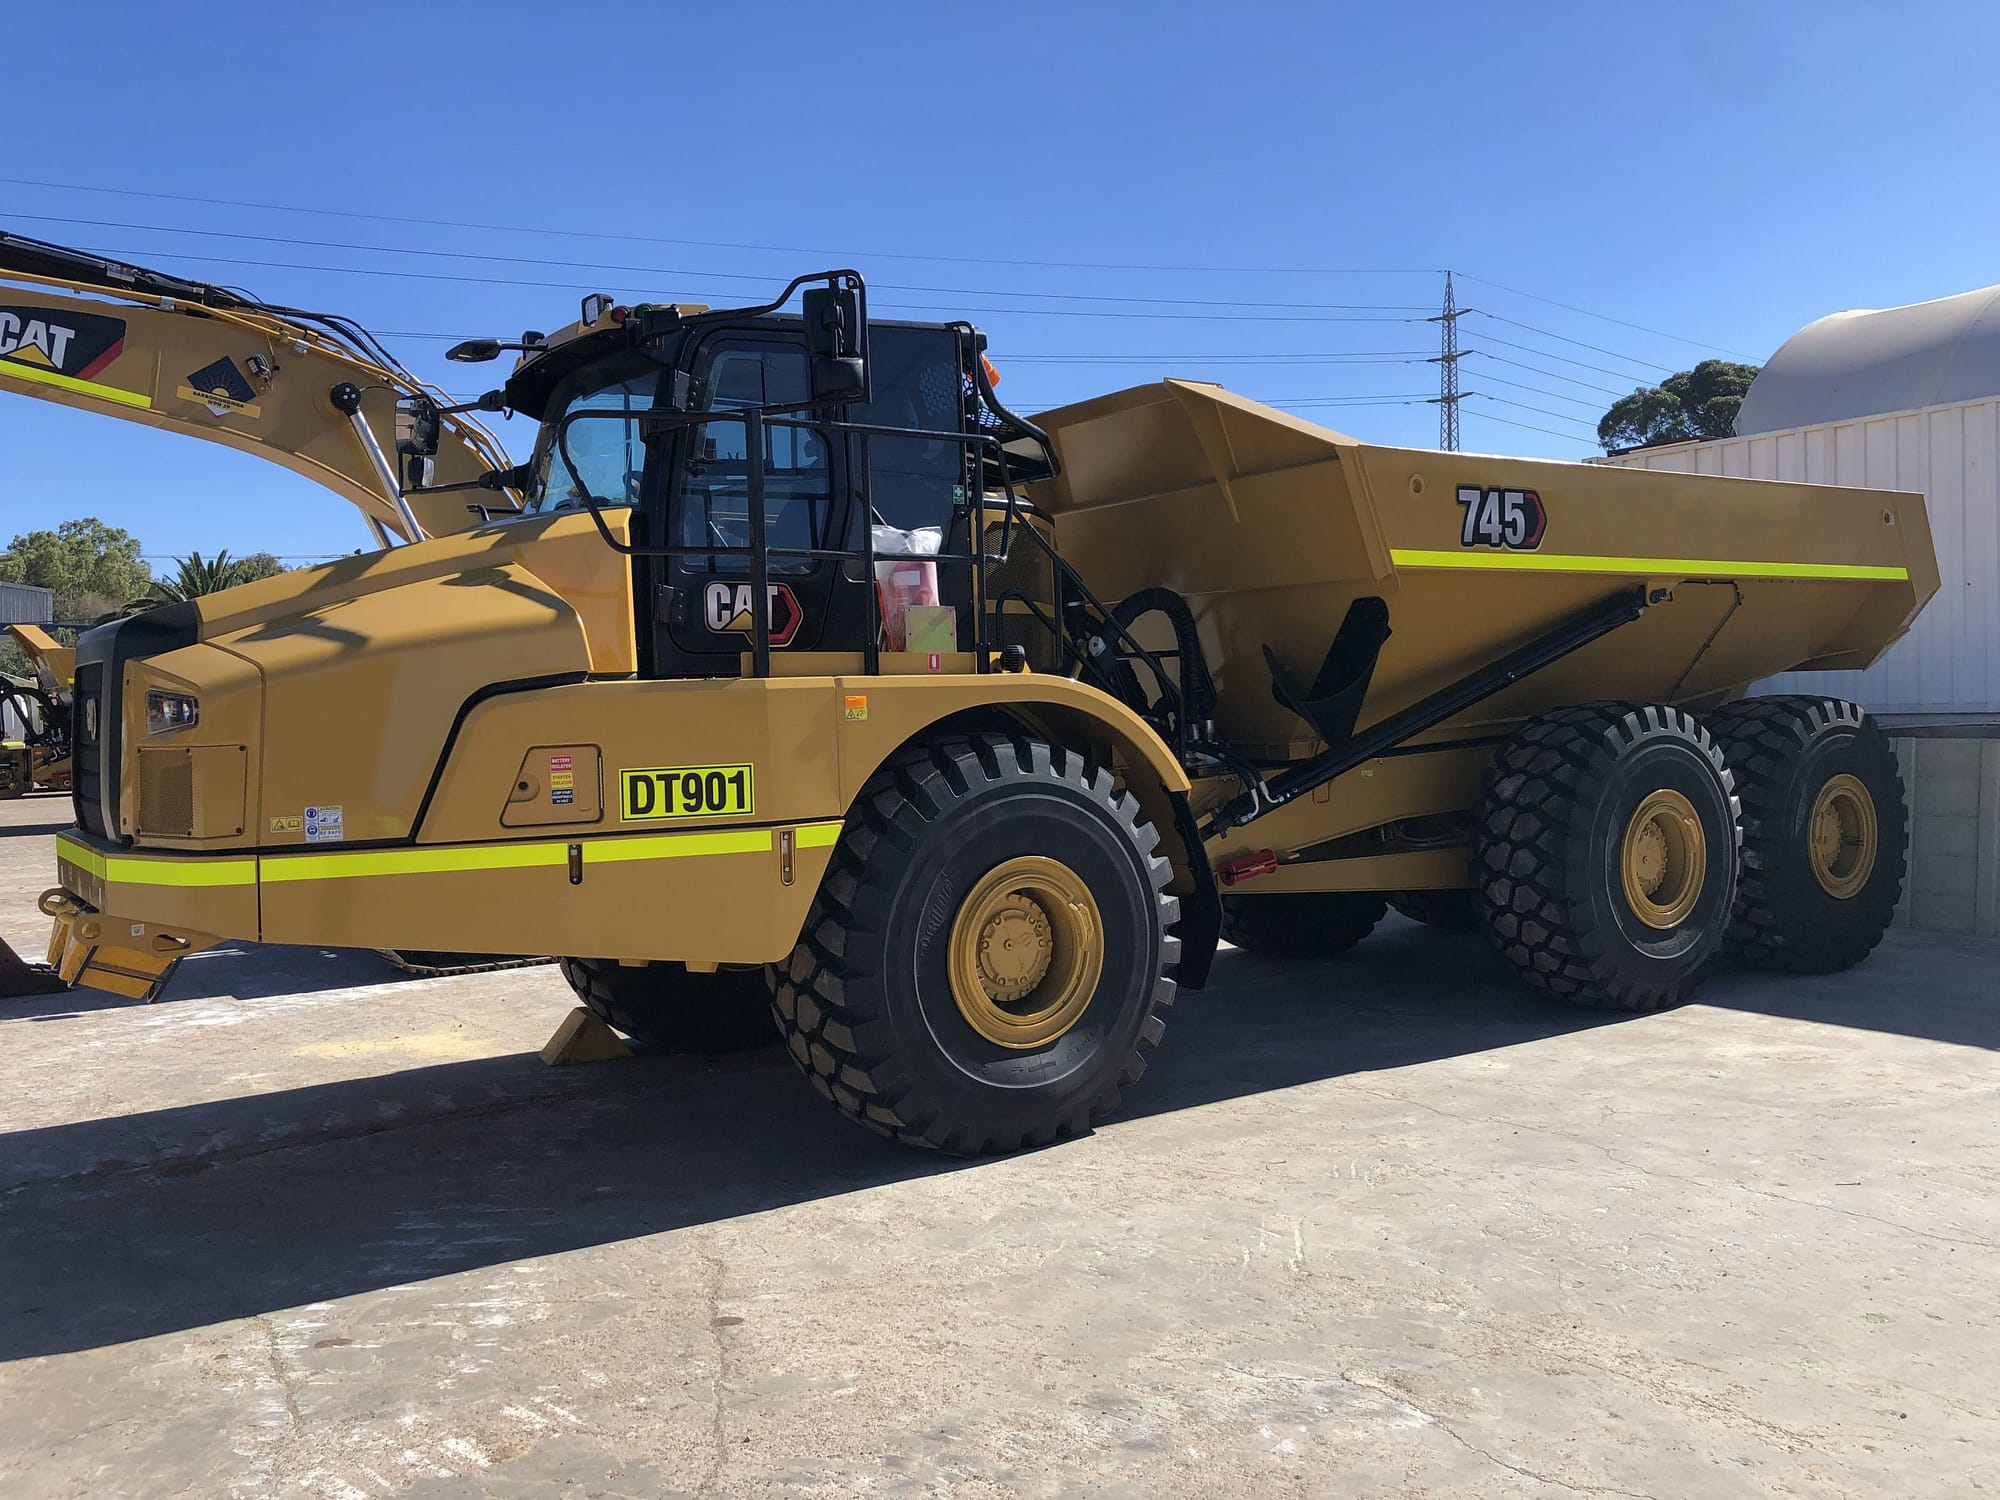 Caterpillar 745 Articulated Dump Truck - For Hire